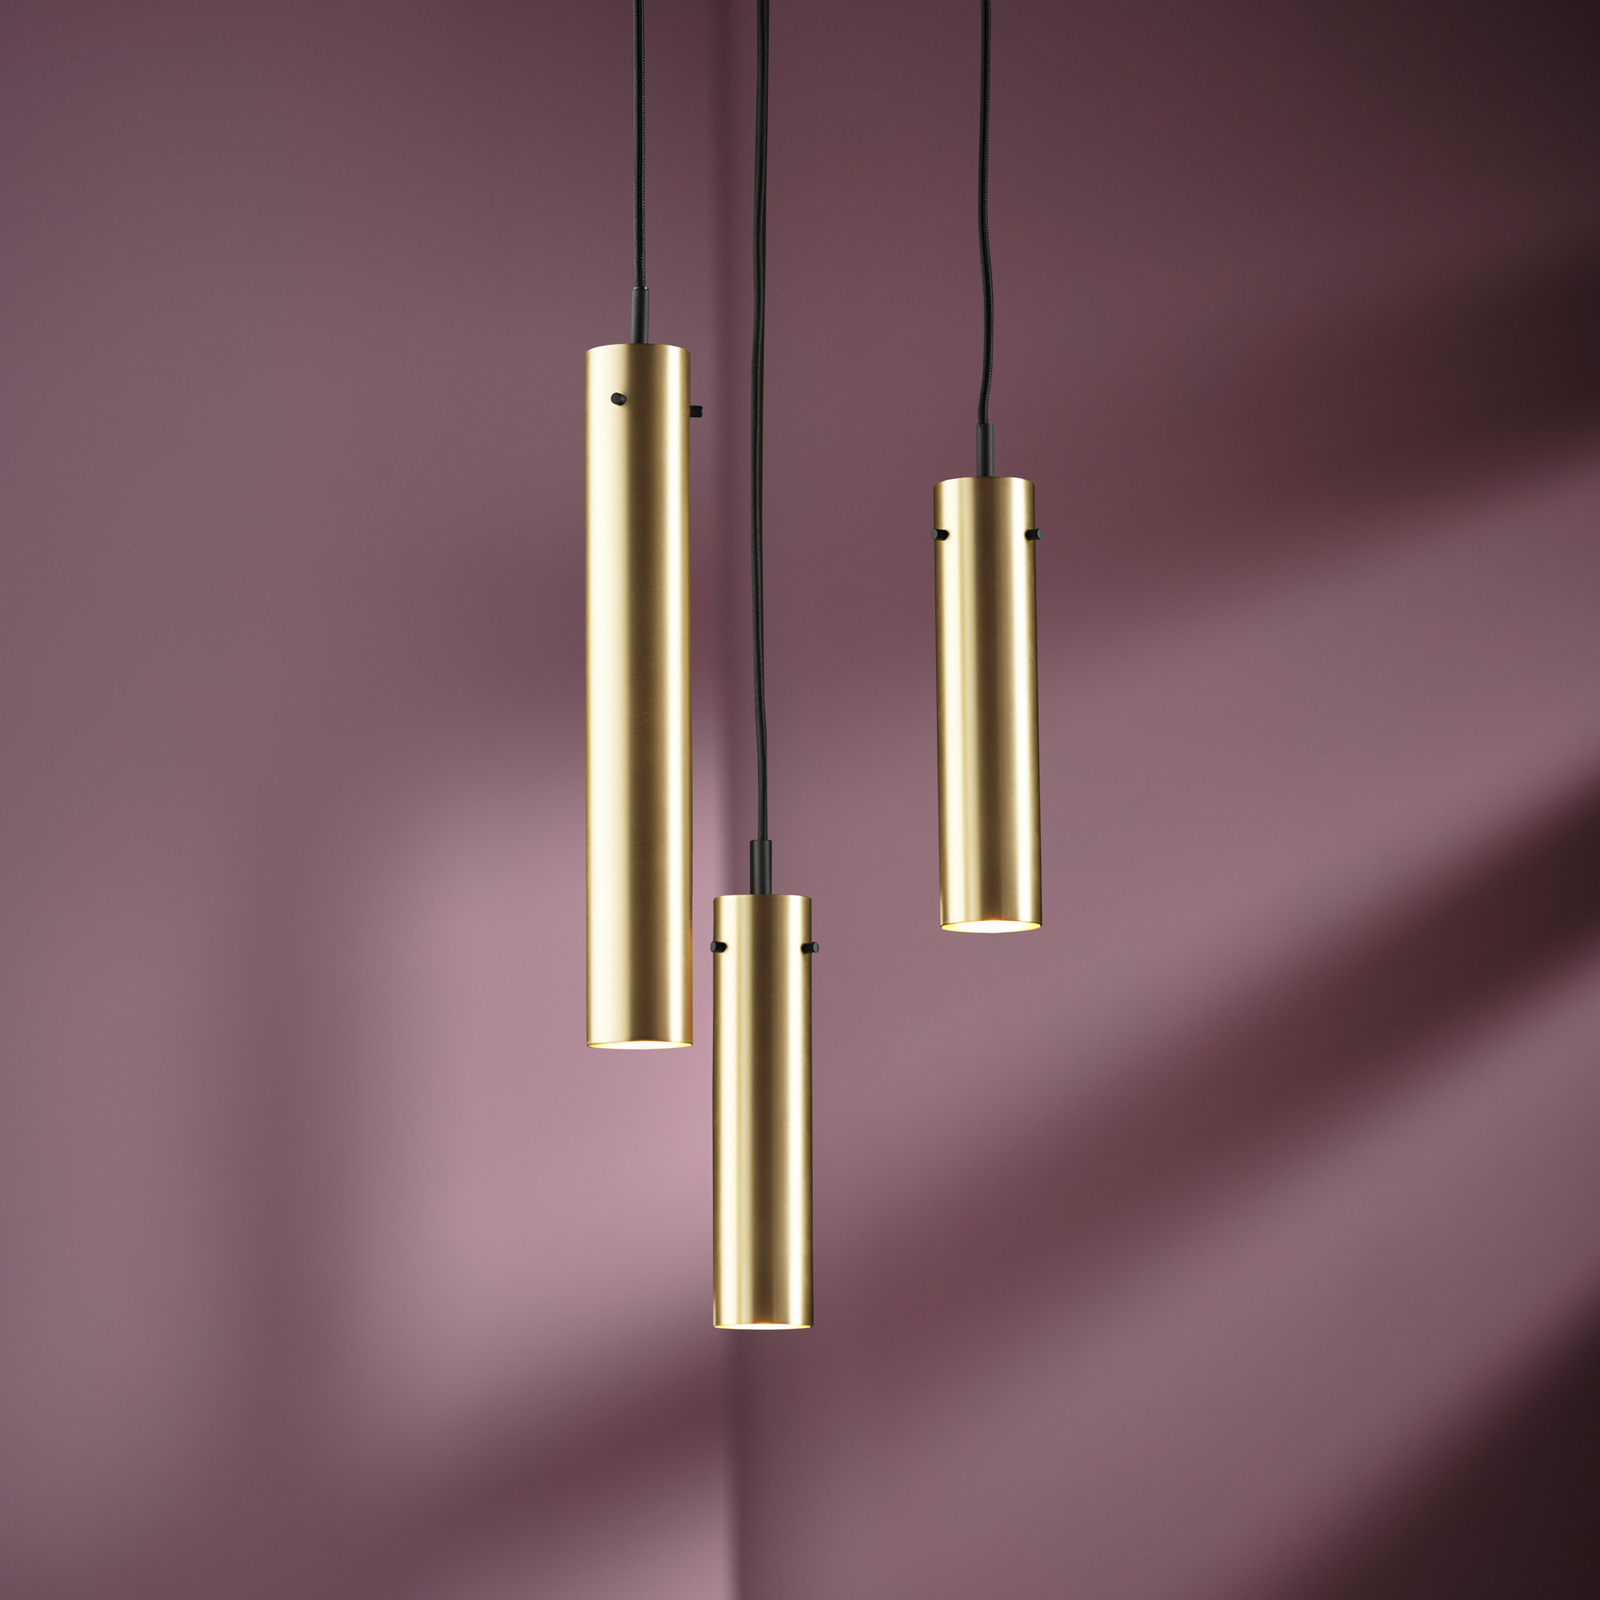 FRANDSEN pendant light FM2014, polished brass, height 36 cm